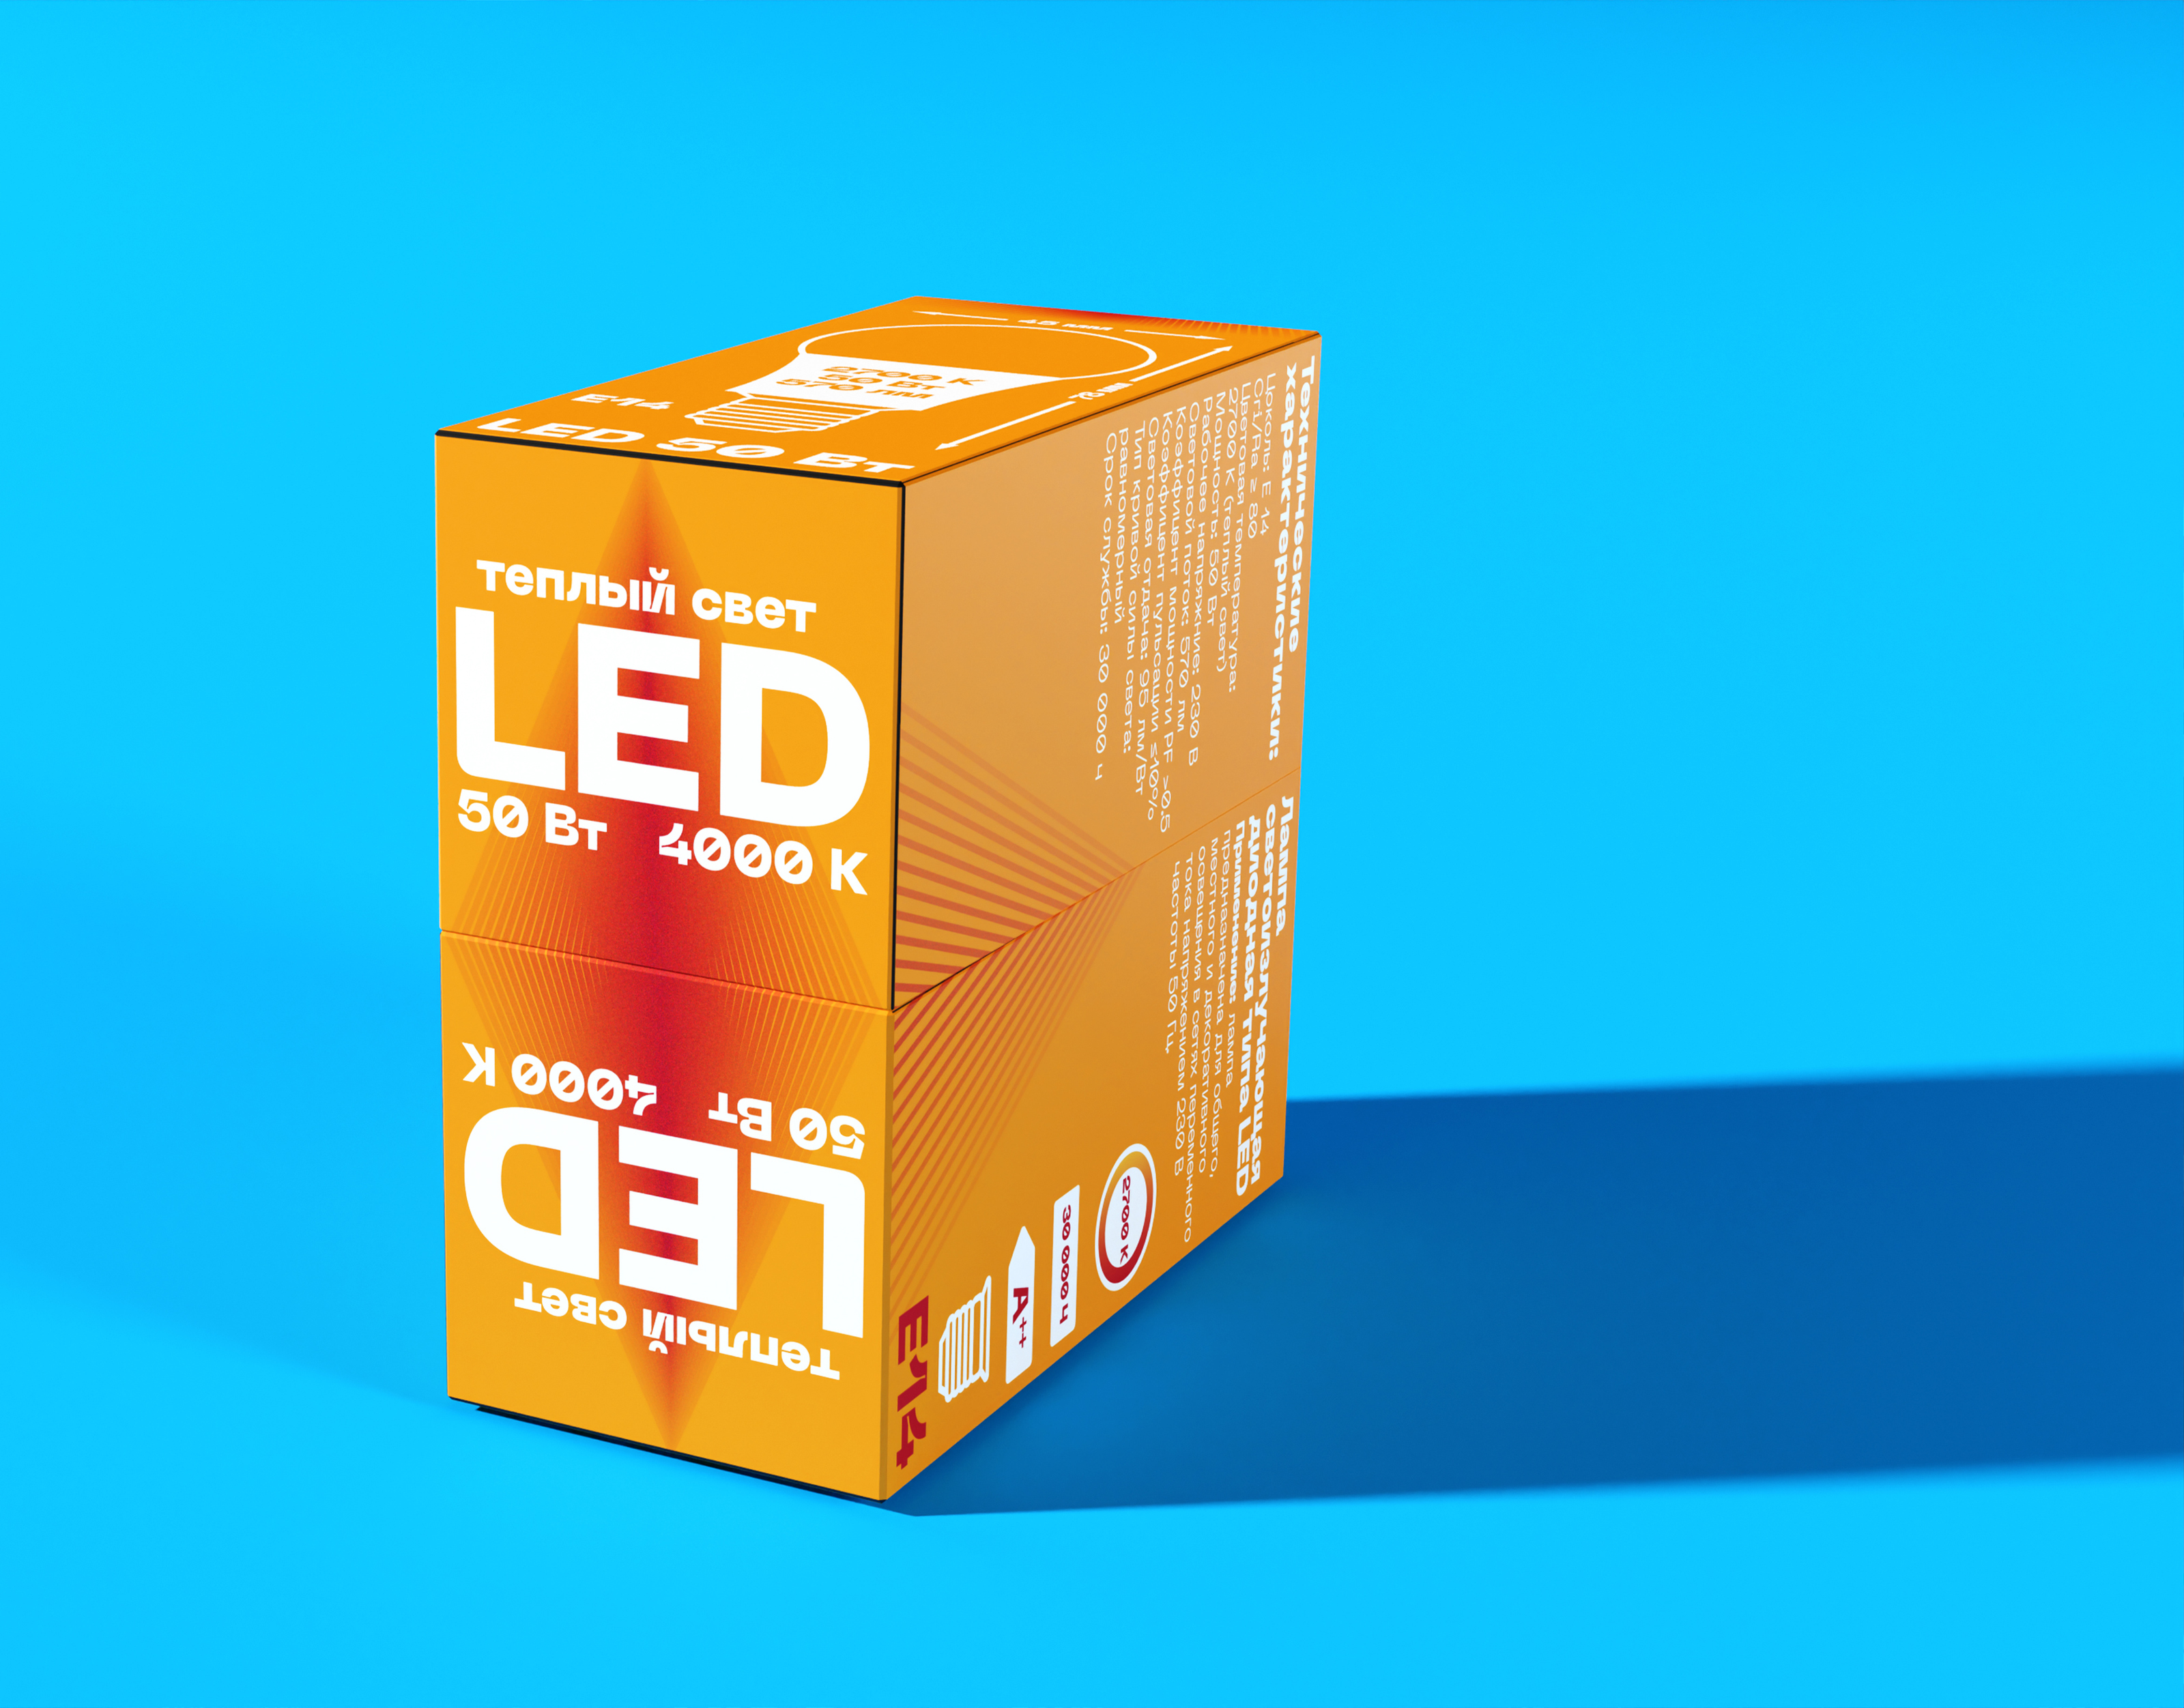 Дизайн упаковки для лампочек — Изображение №3 — Брендинг, 3D на Dprofile